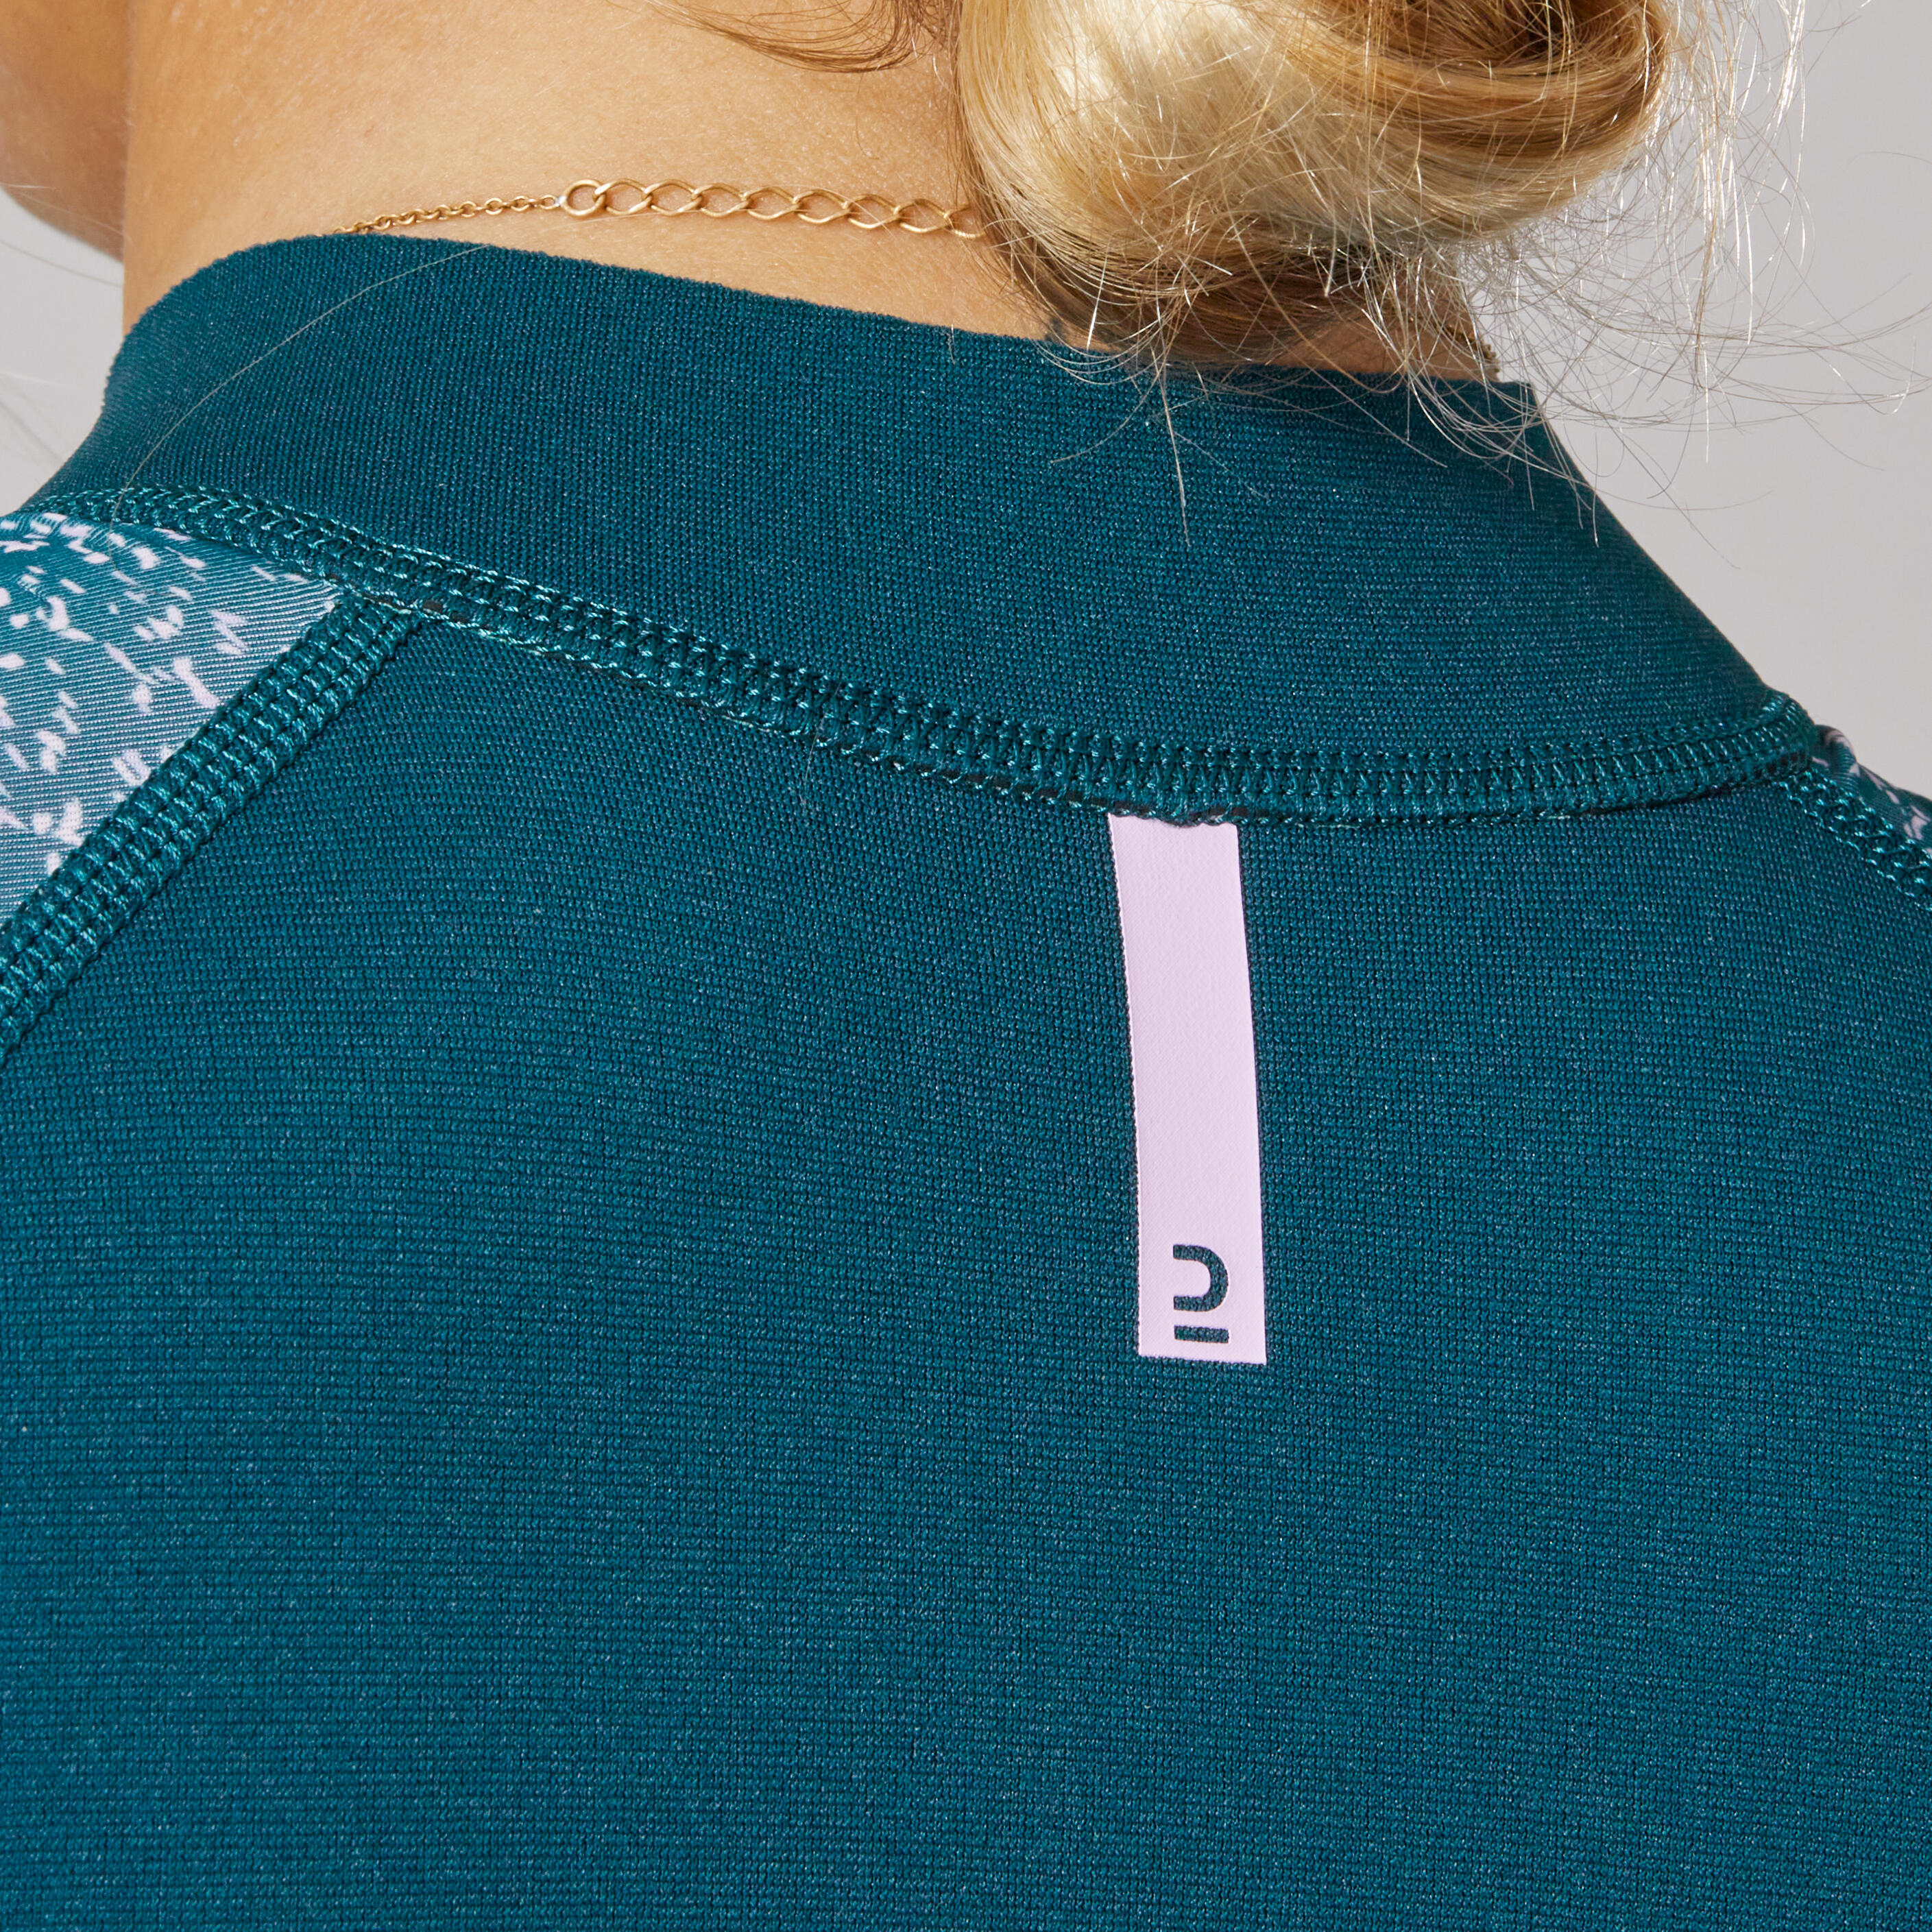 Women's top anti-UV short-sleeved 1.5 mm neoprene navy blue 6/9